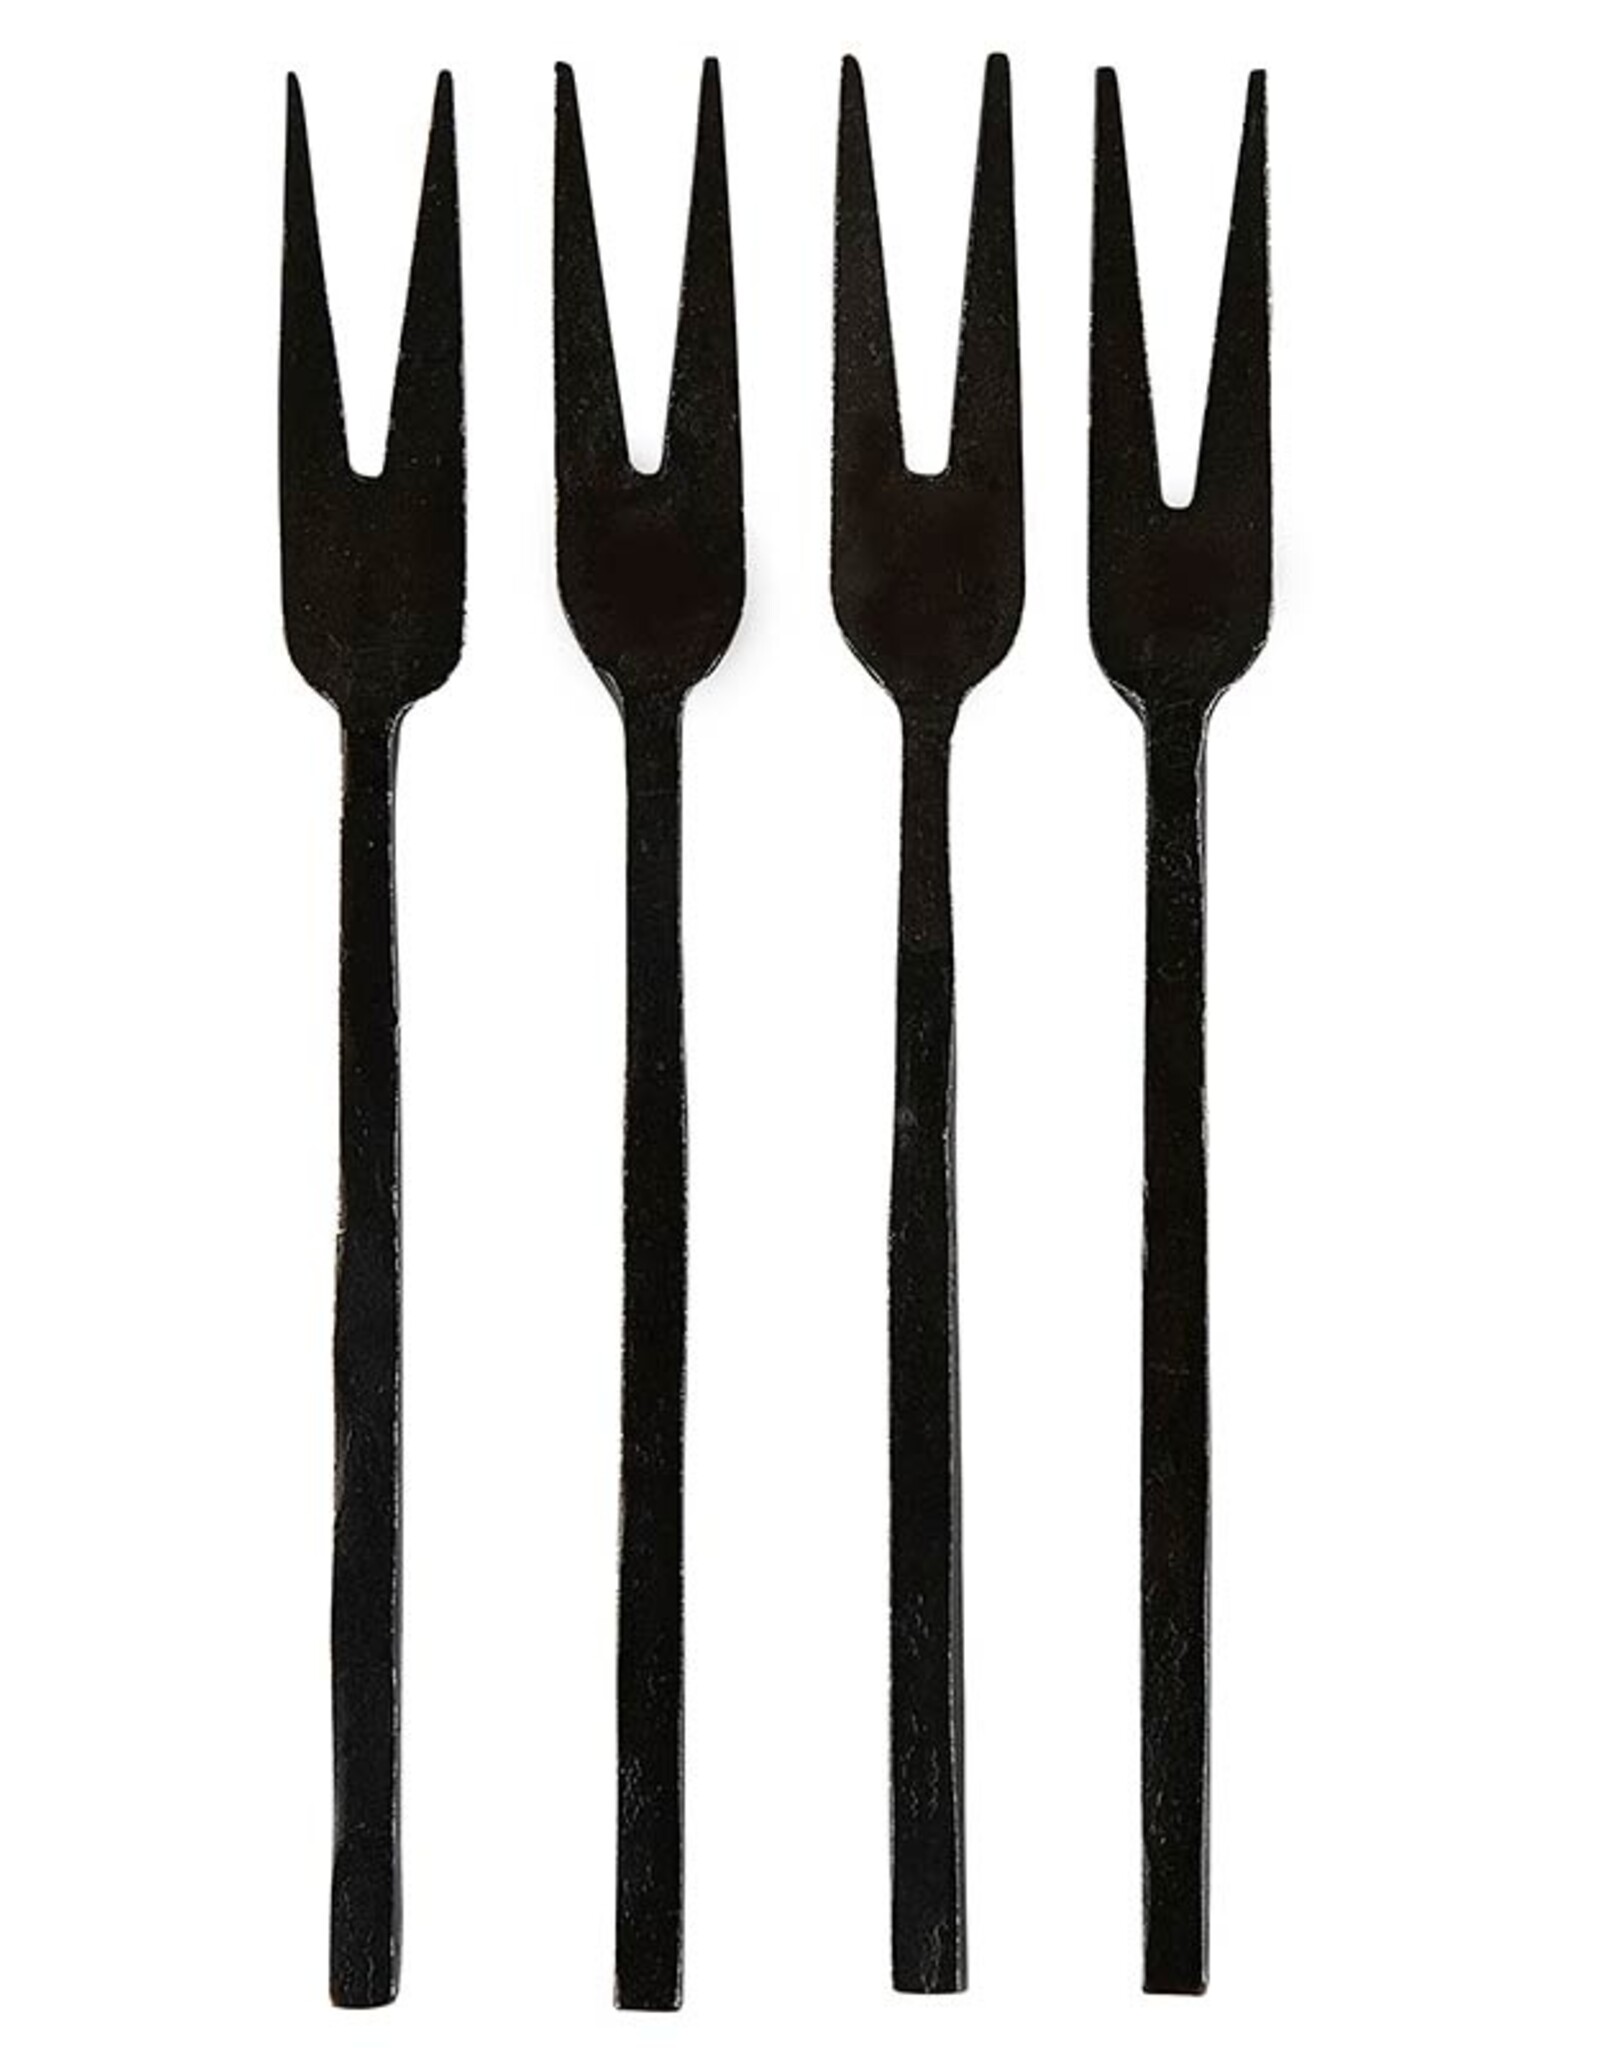 Hammered Appetizer Forks - Matte Black